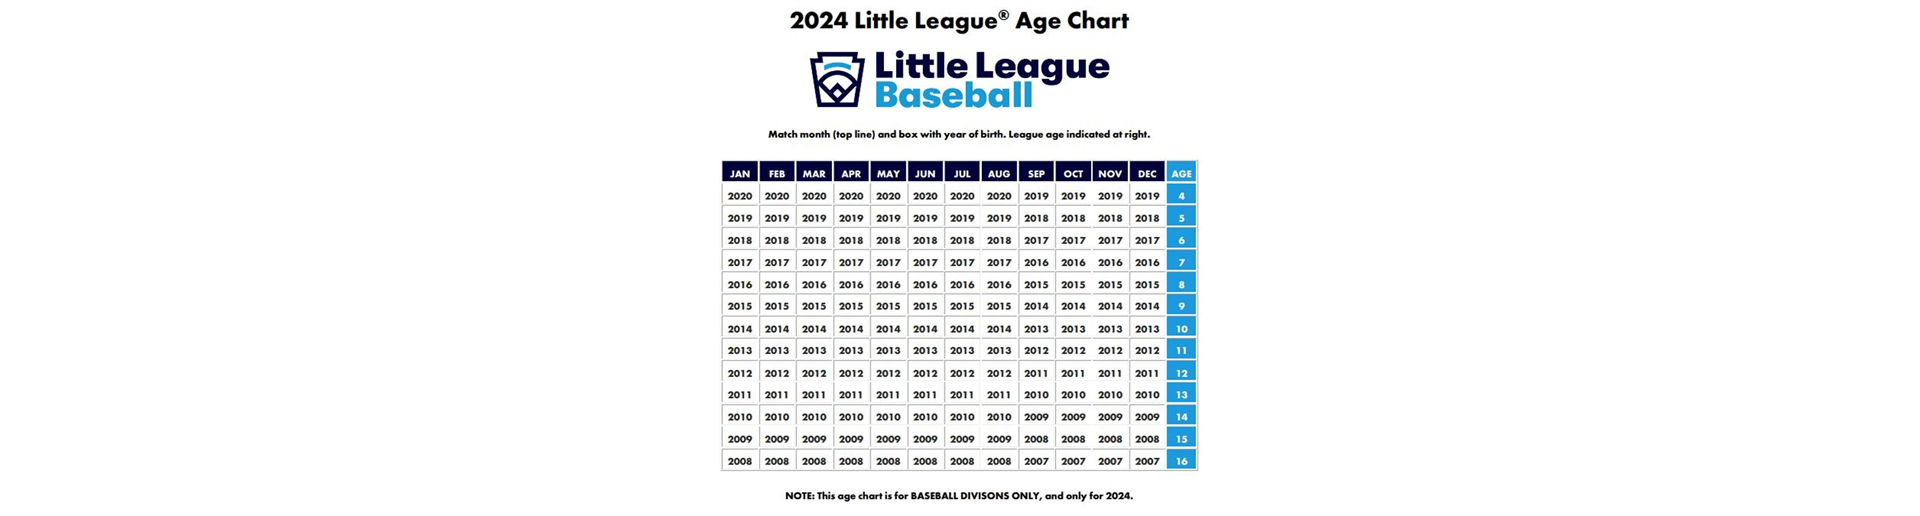 Age Chart 2024